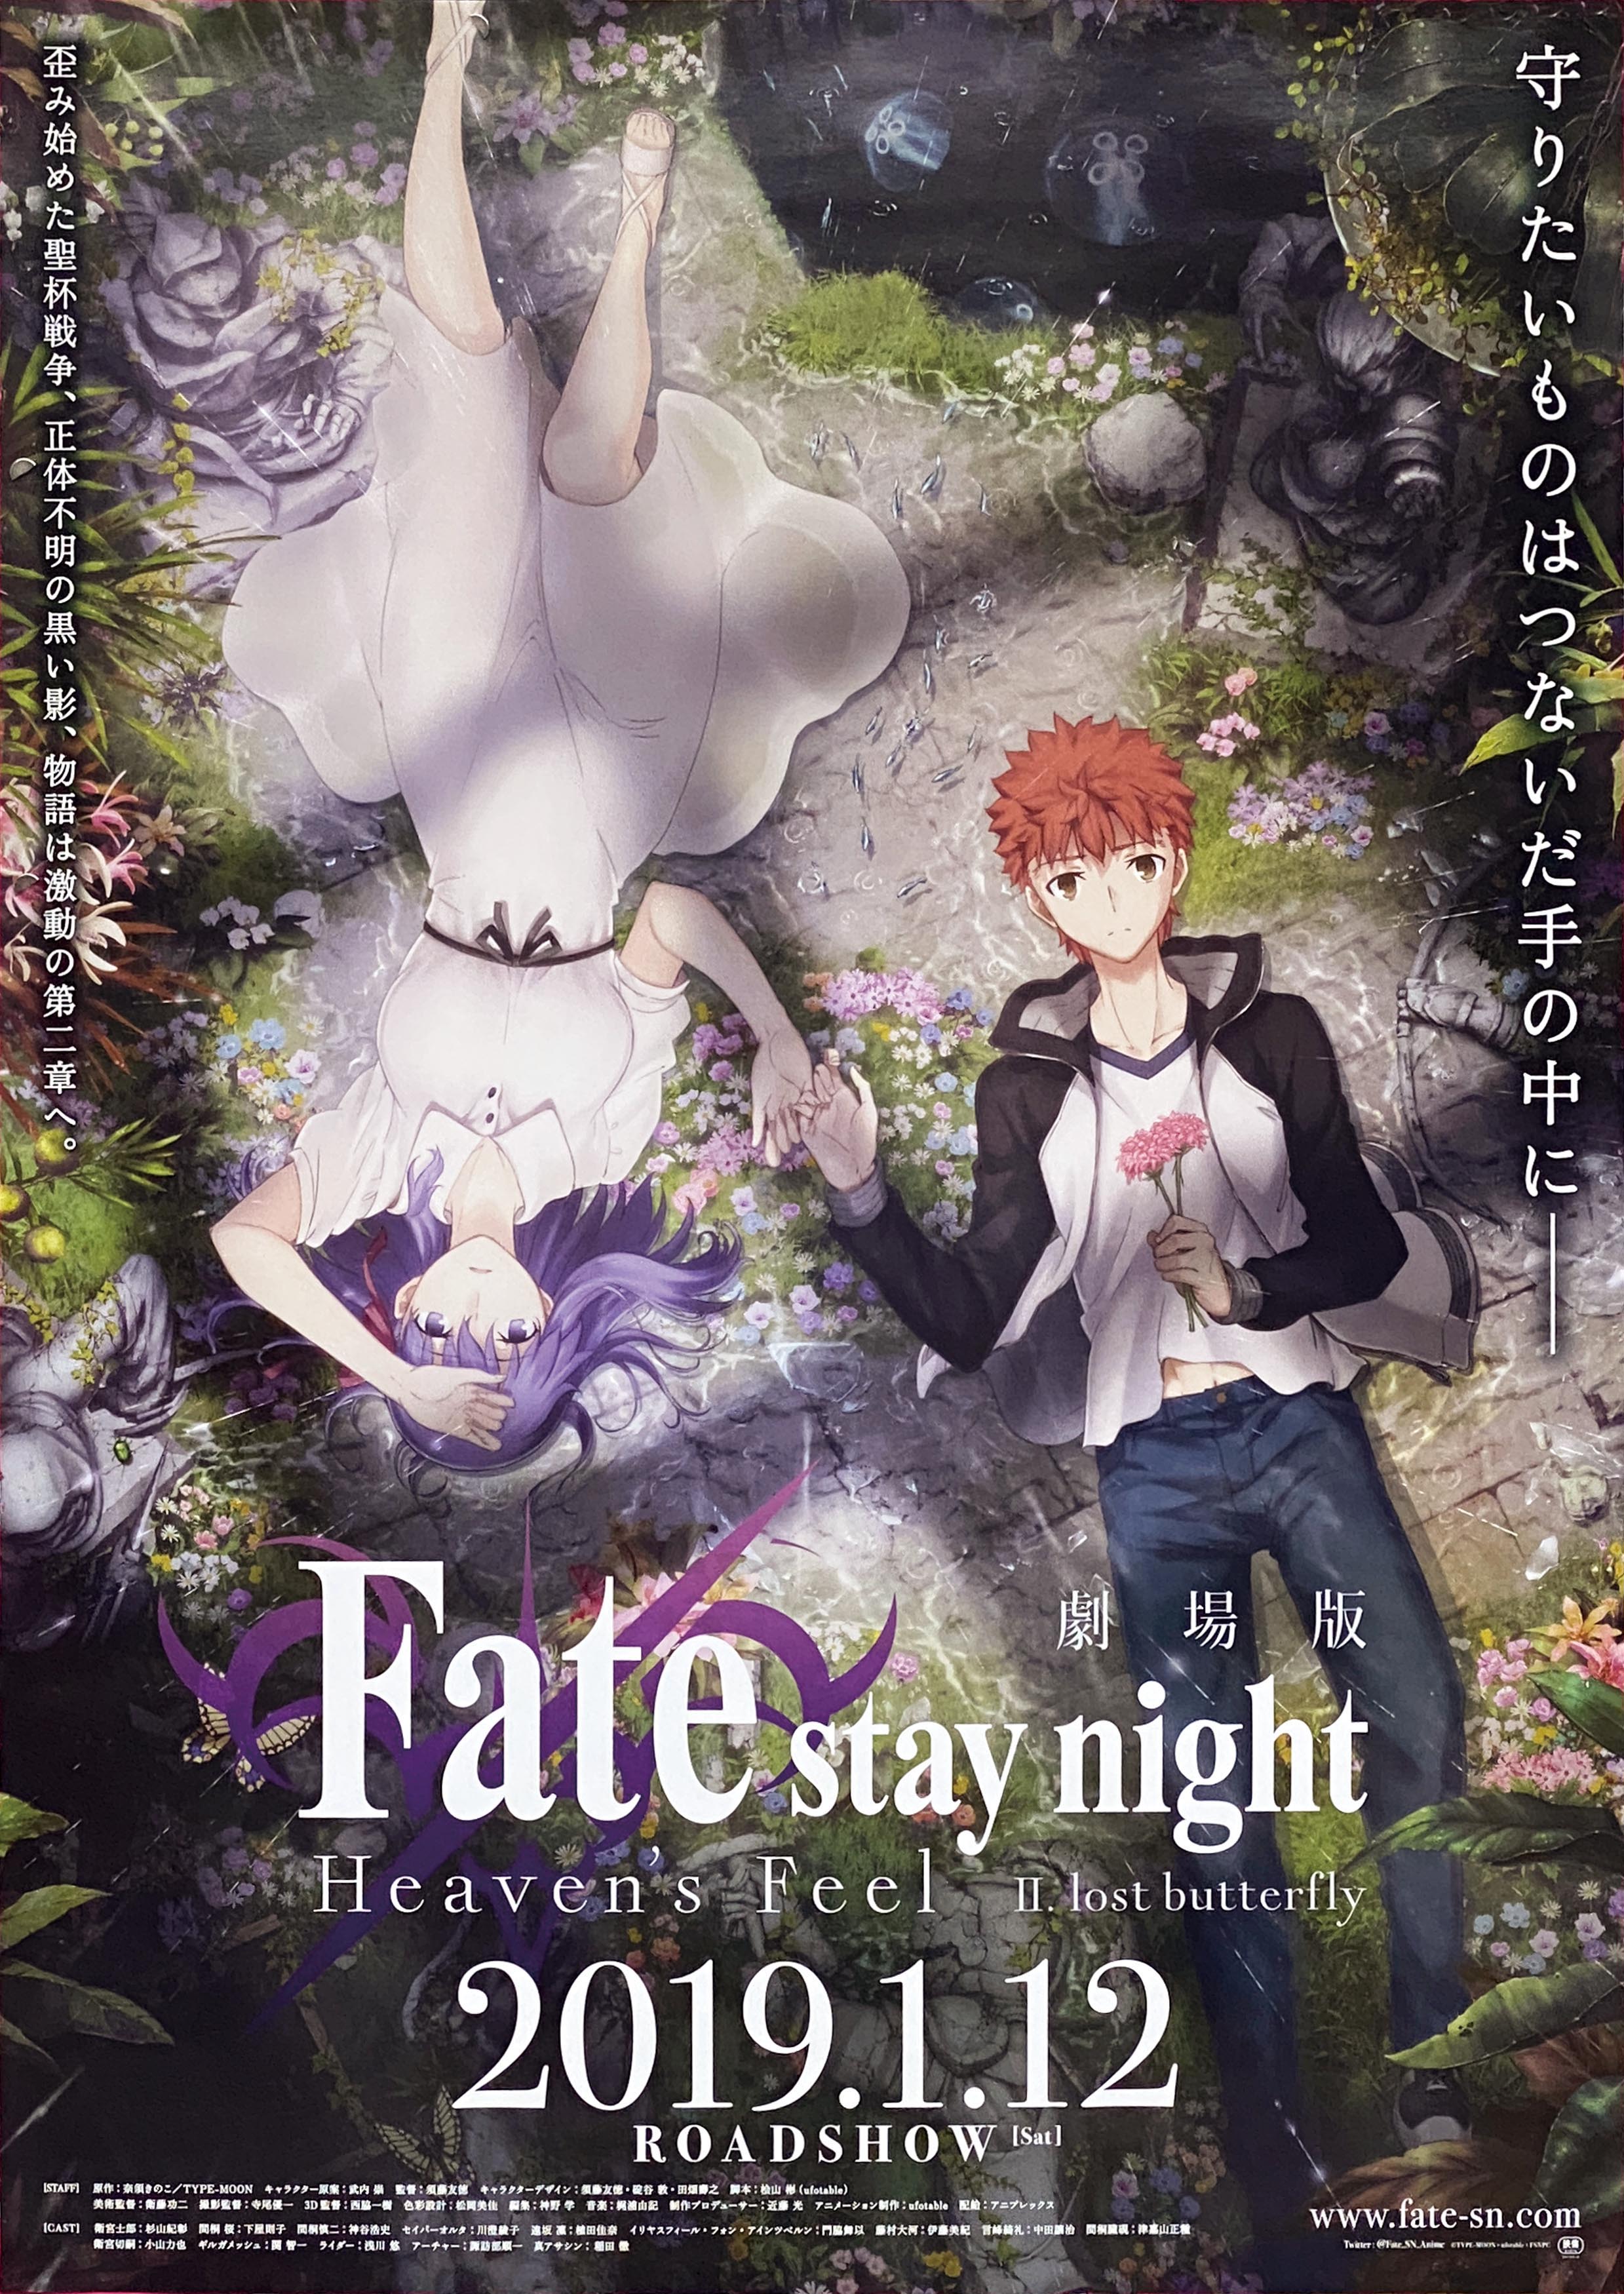 劇場版 Fate/stay night Heaven's Feel 2章 ポスター［別ver.］